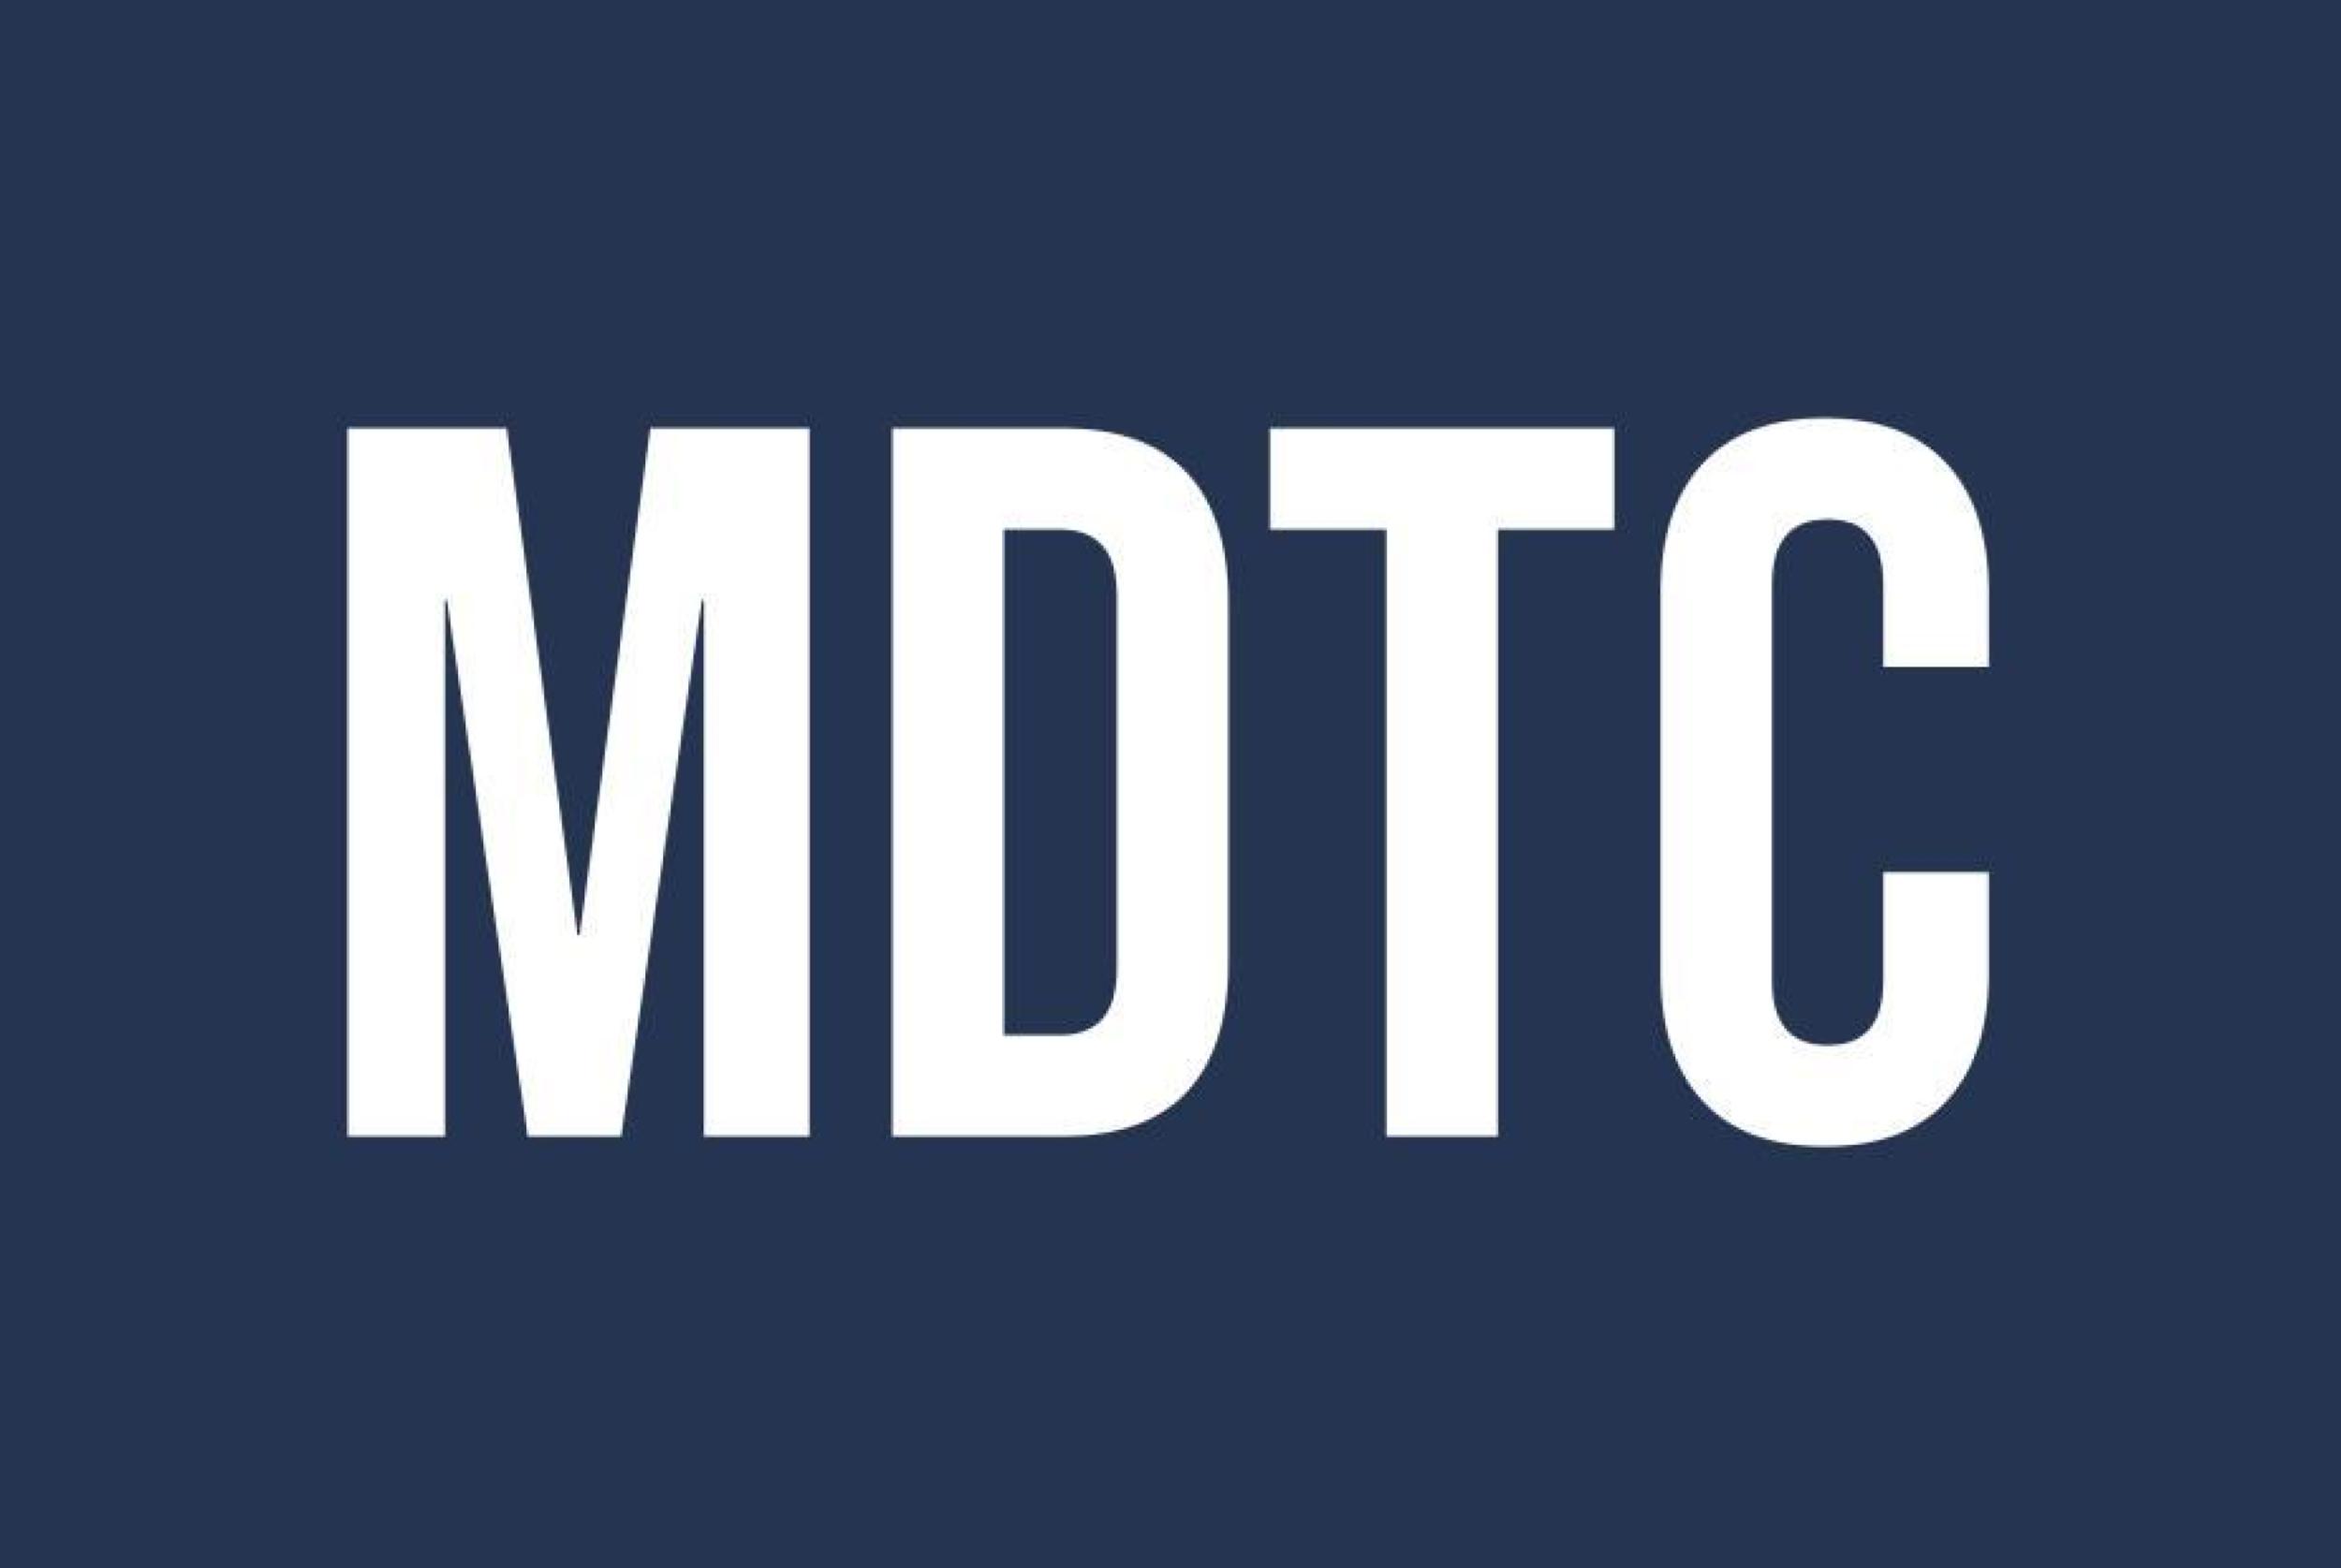 MDTC